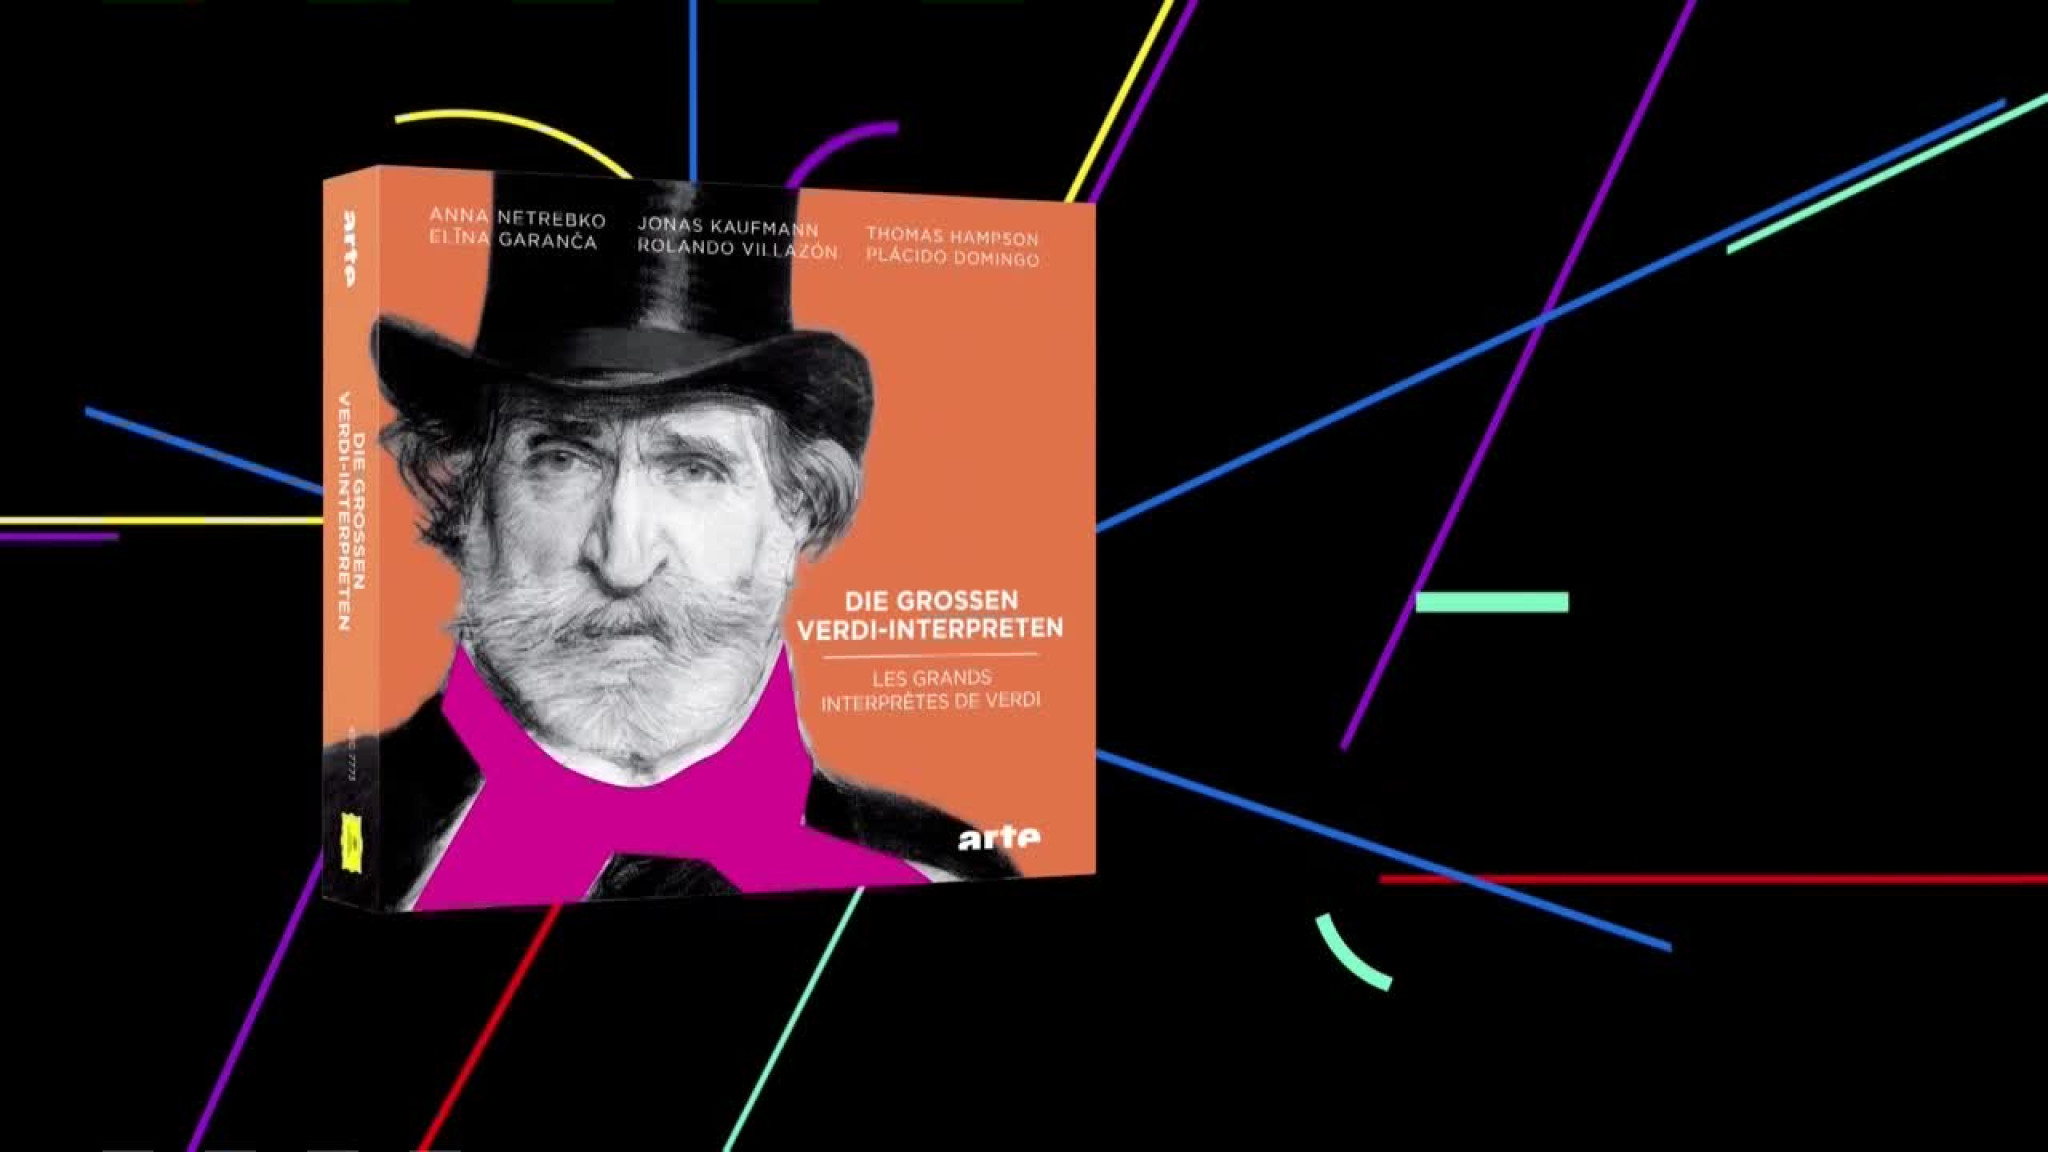 Die großen Verdi-Interpreten: Das Album von Arte und Deutsche Grammophon